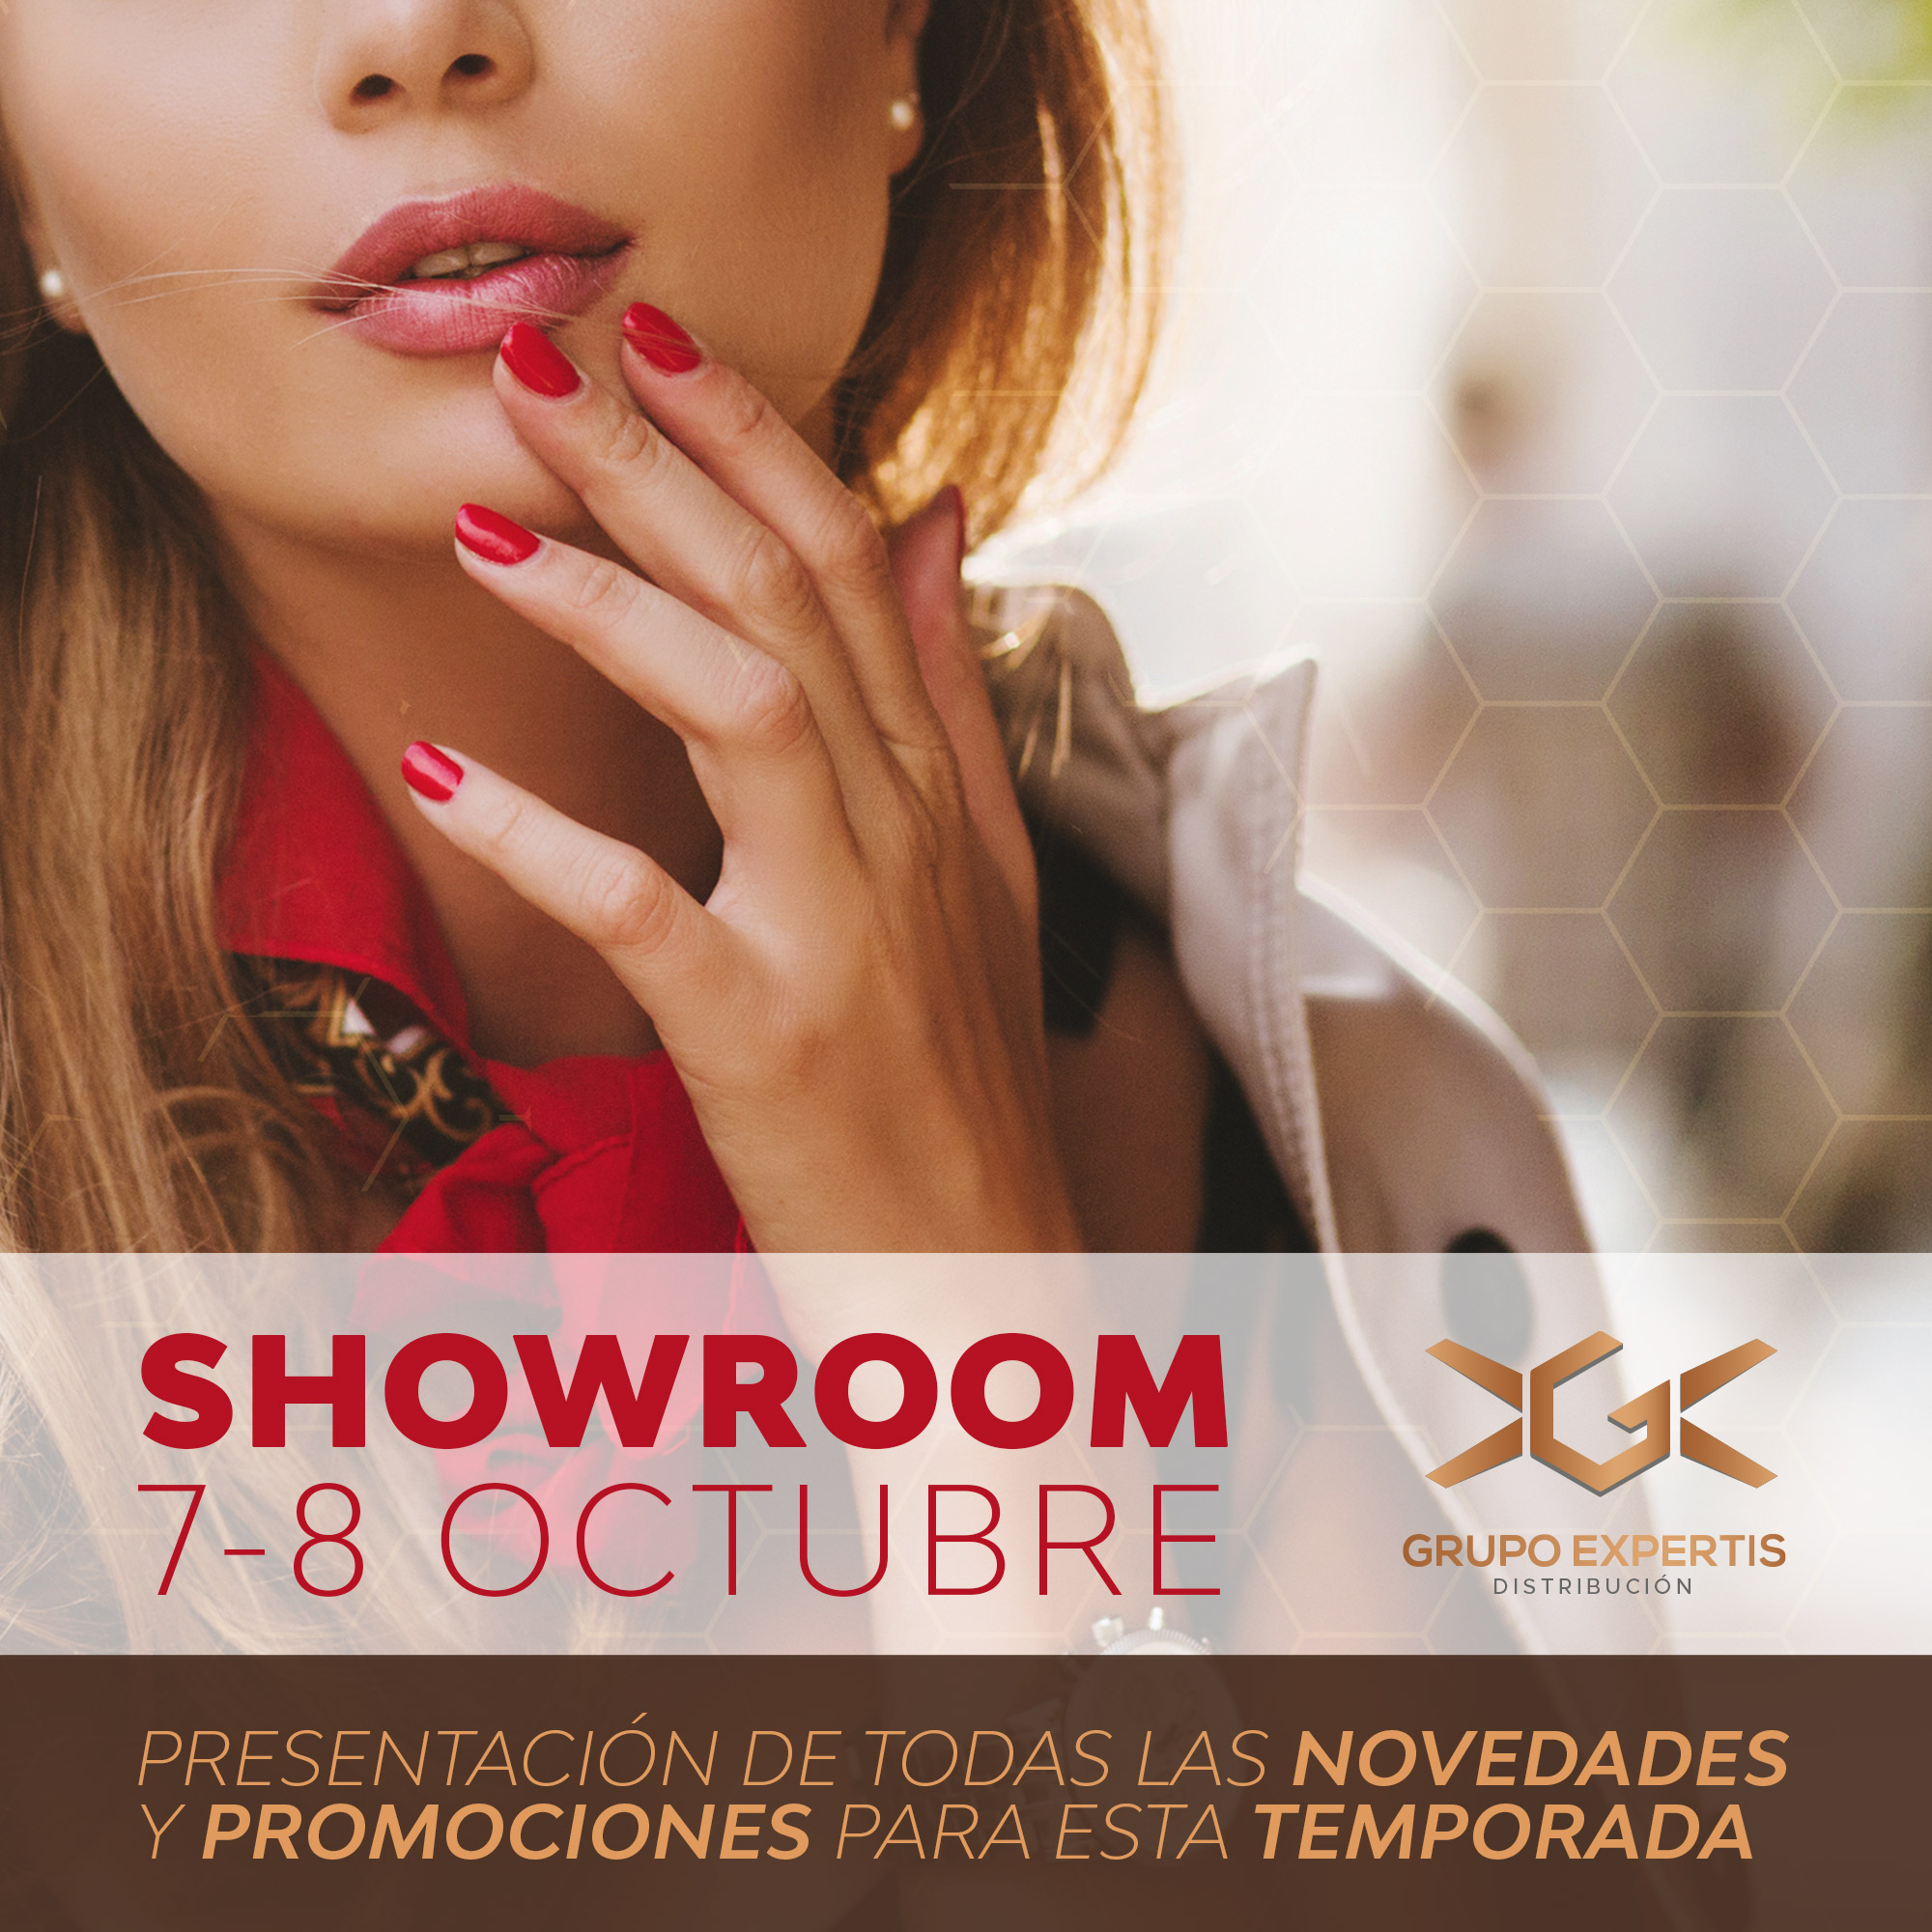 Showroom 7 y 8 octubre